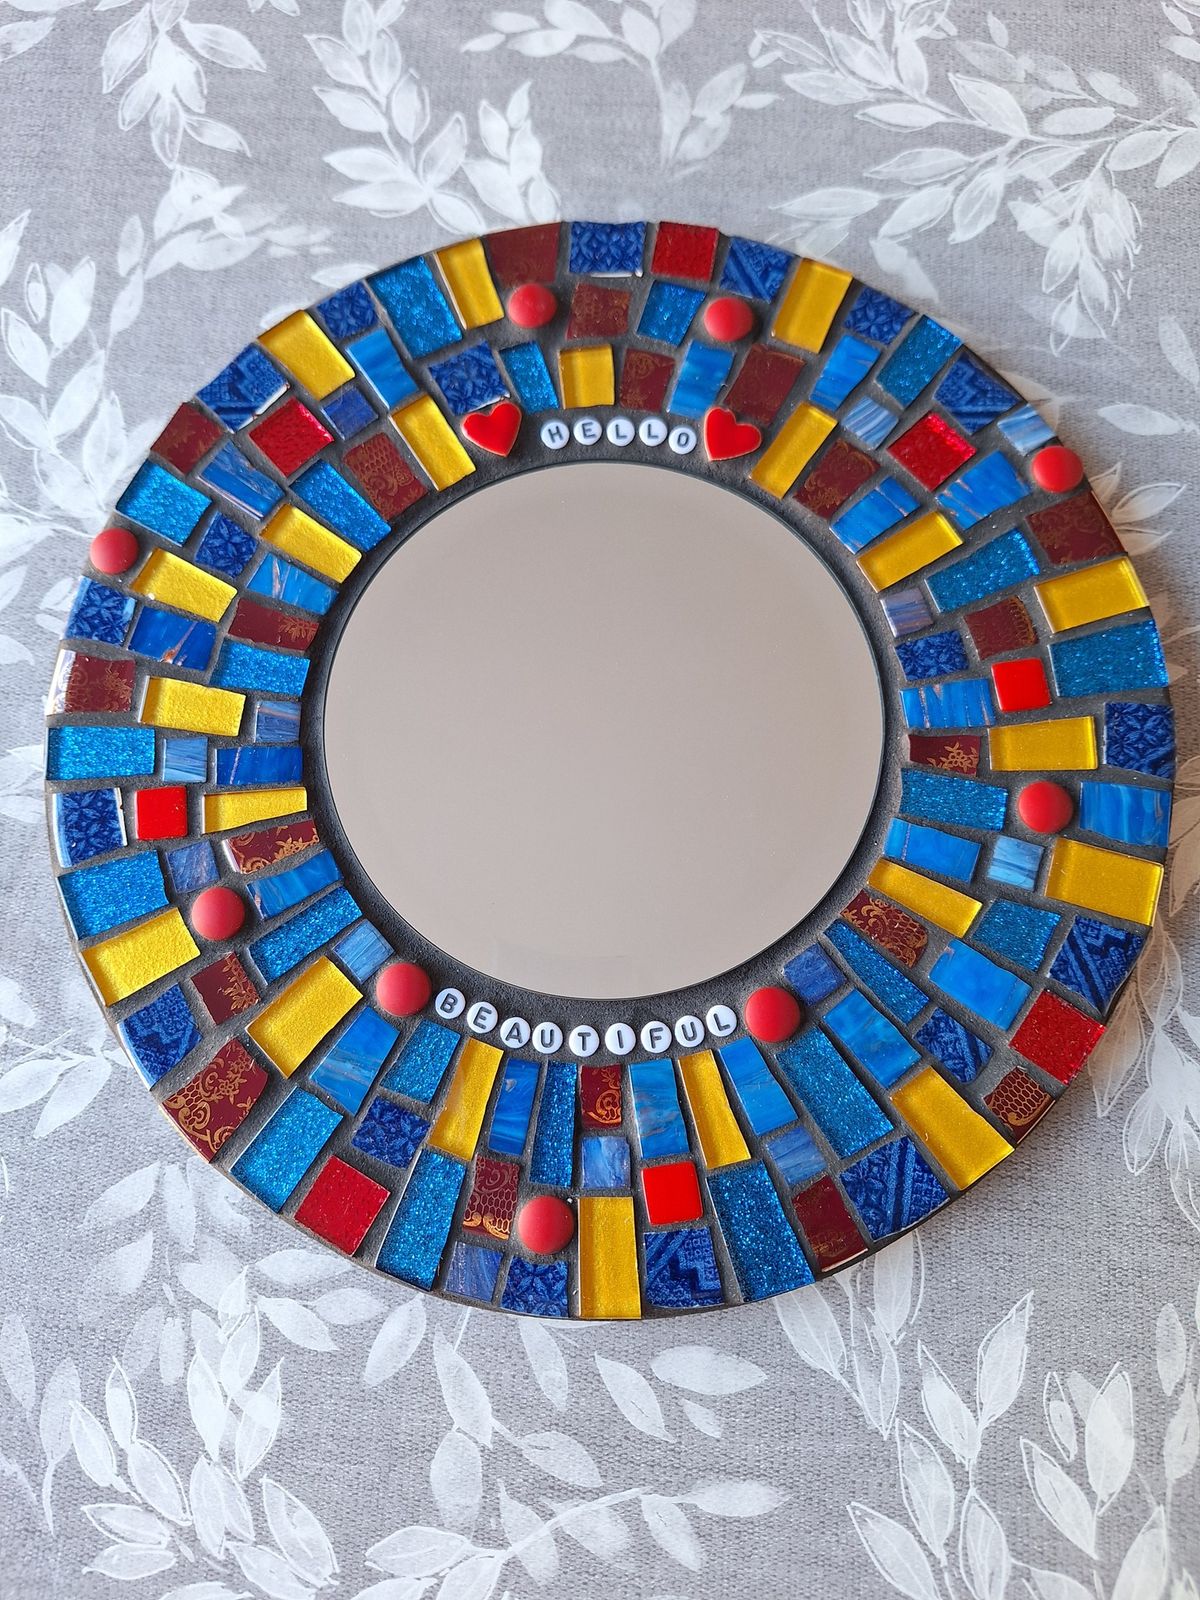 Mosaic mirror workshop 